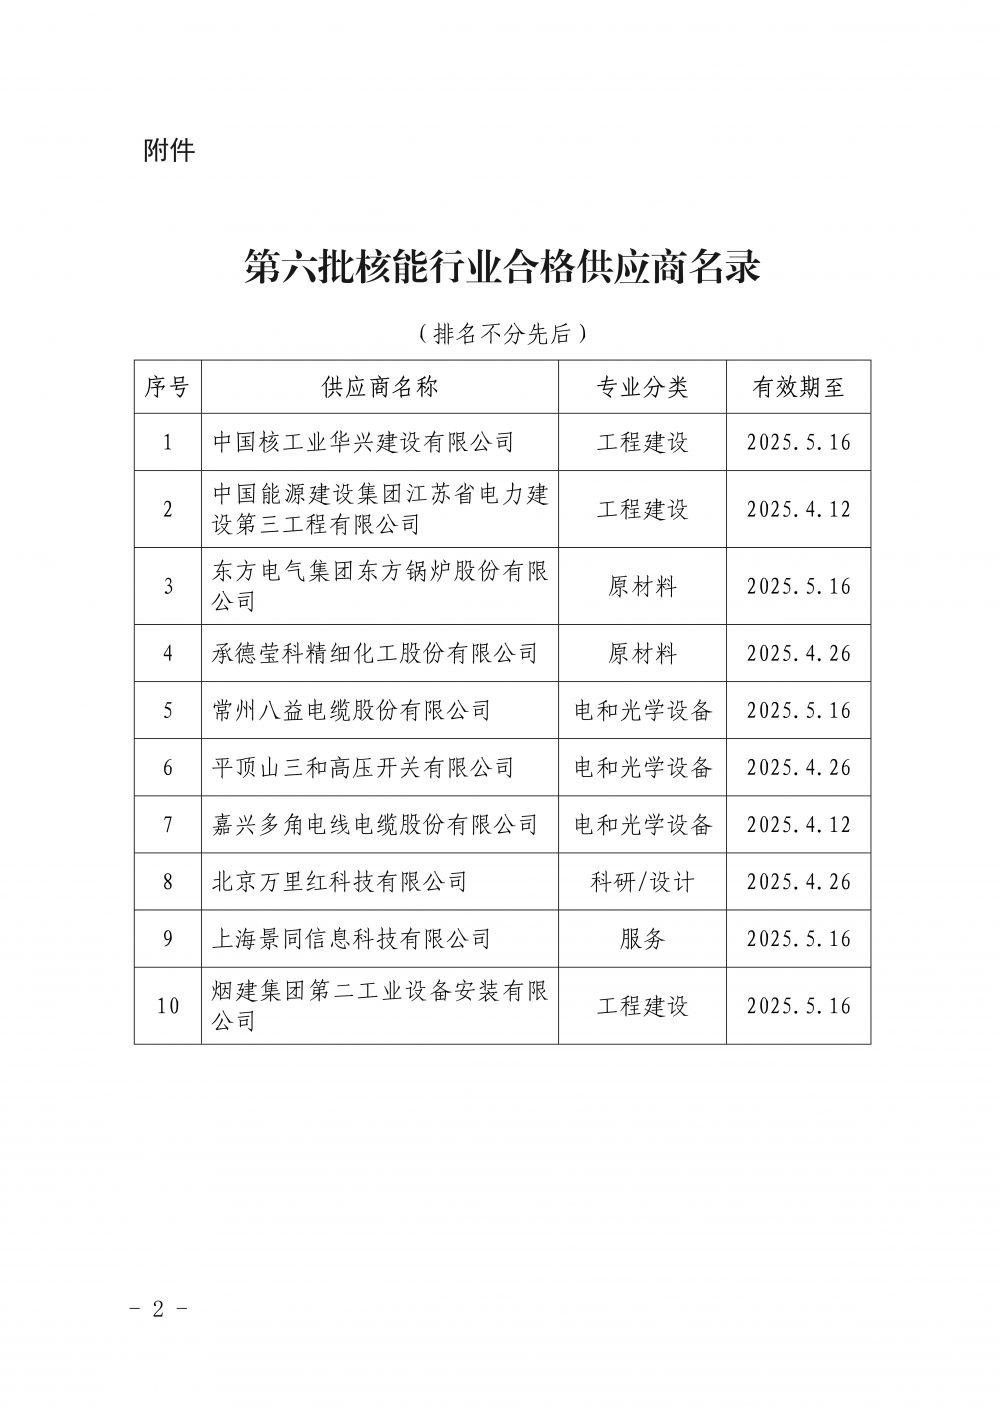 关于发布中国核能行业协会核能行业第六批合格供应商名录的公告_2.jpg